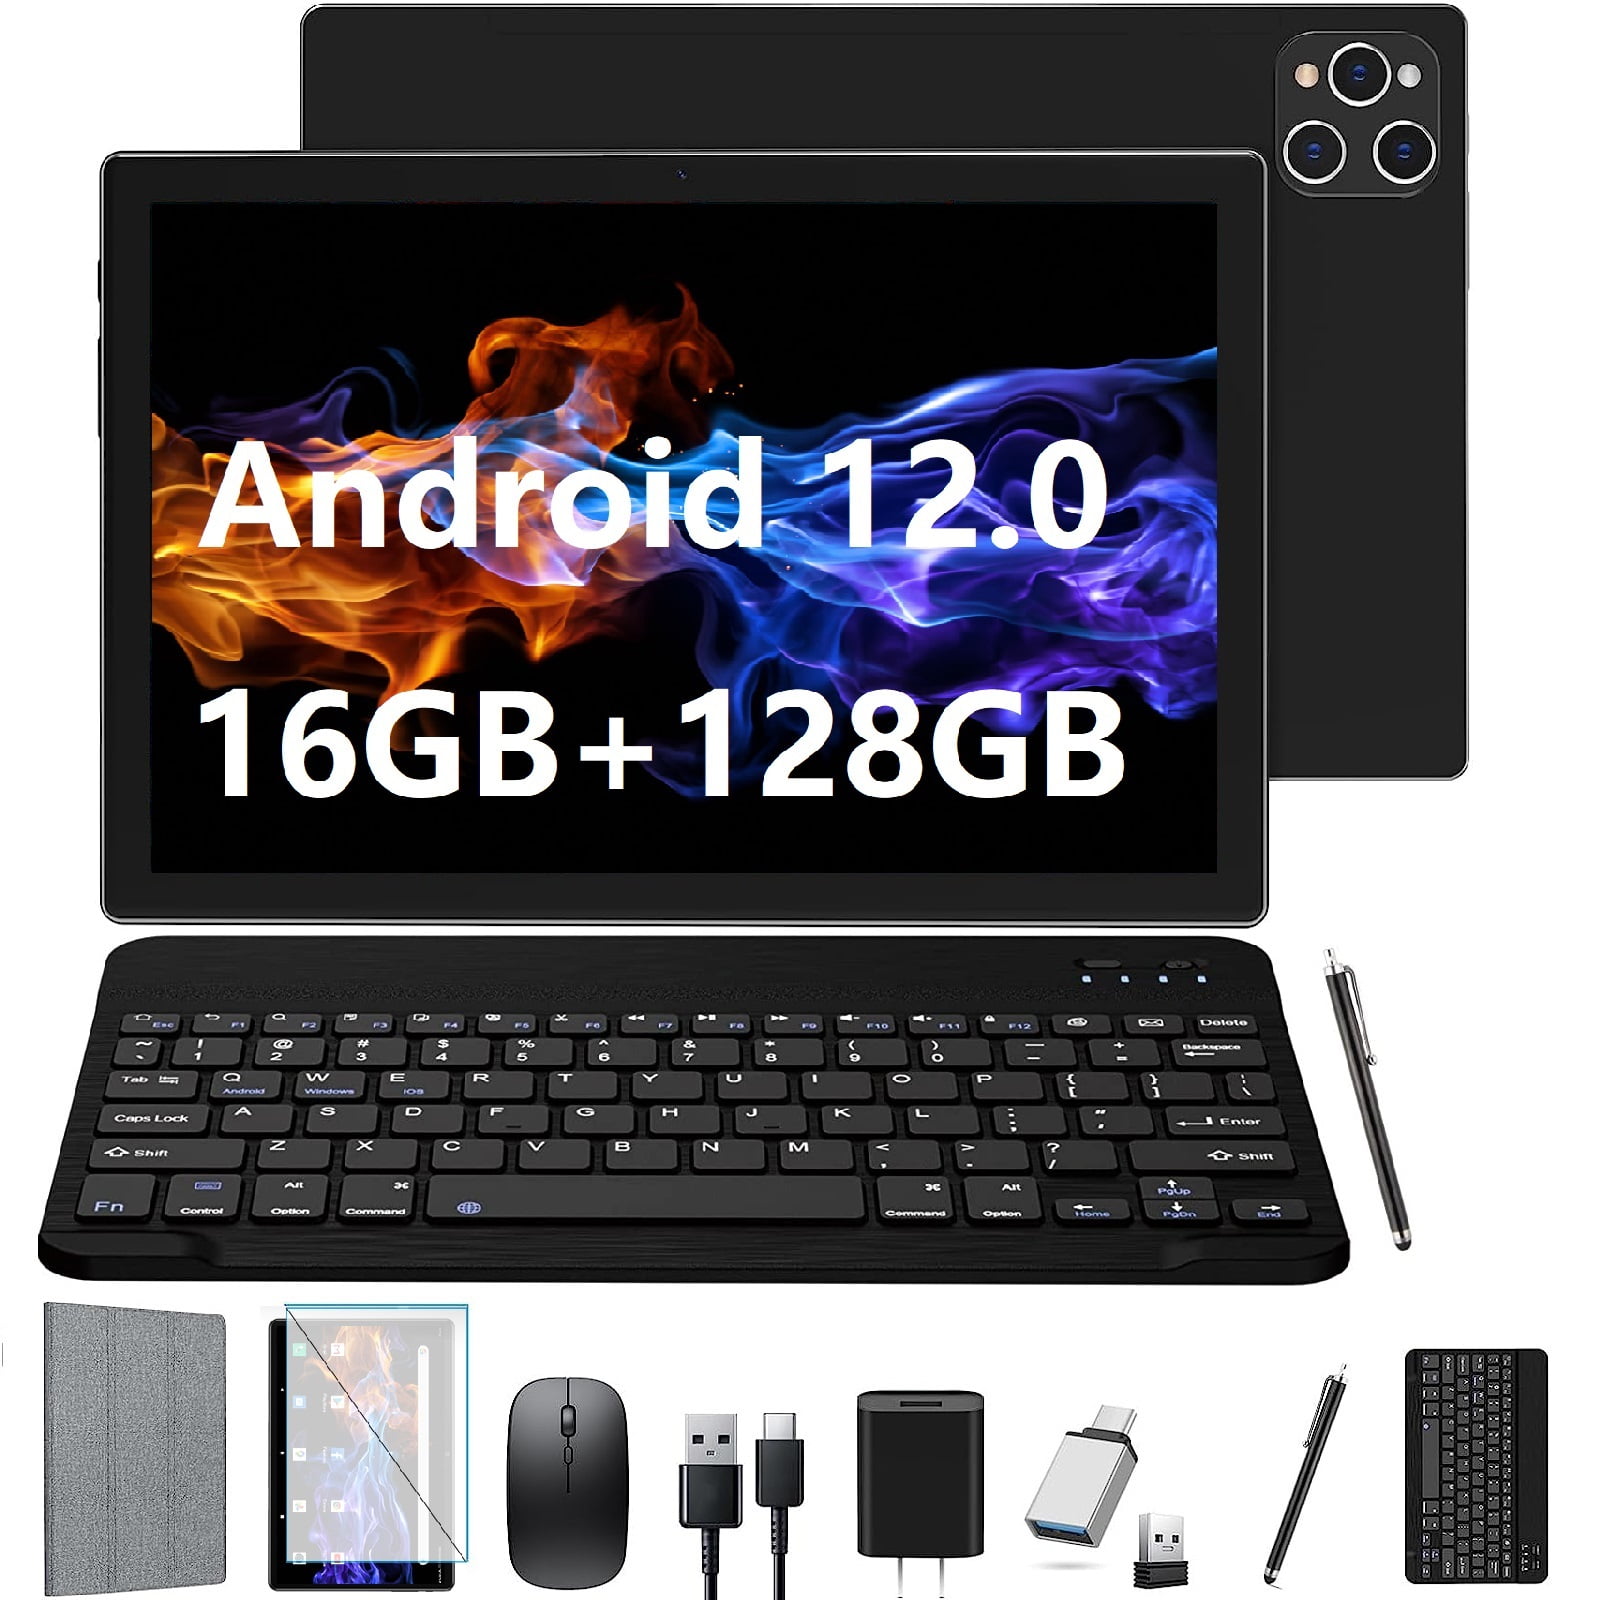  Tablet Android de 10 pulgadas, tableta Android 12, 6 GB de RAM,  64 GB de ROM, tableta Android de expansión de 512 GB con doble cámara, WiFi  5G y 2.4G, Bluetooth